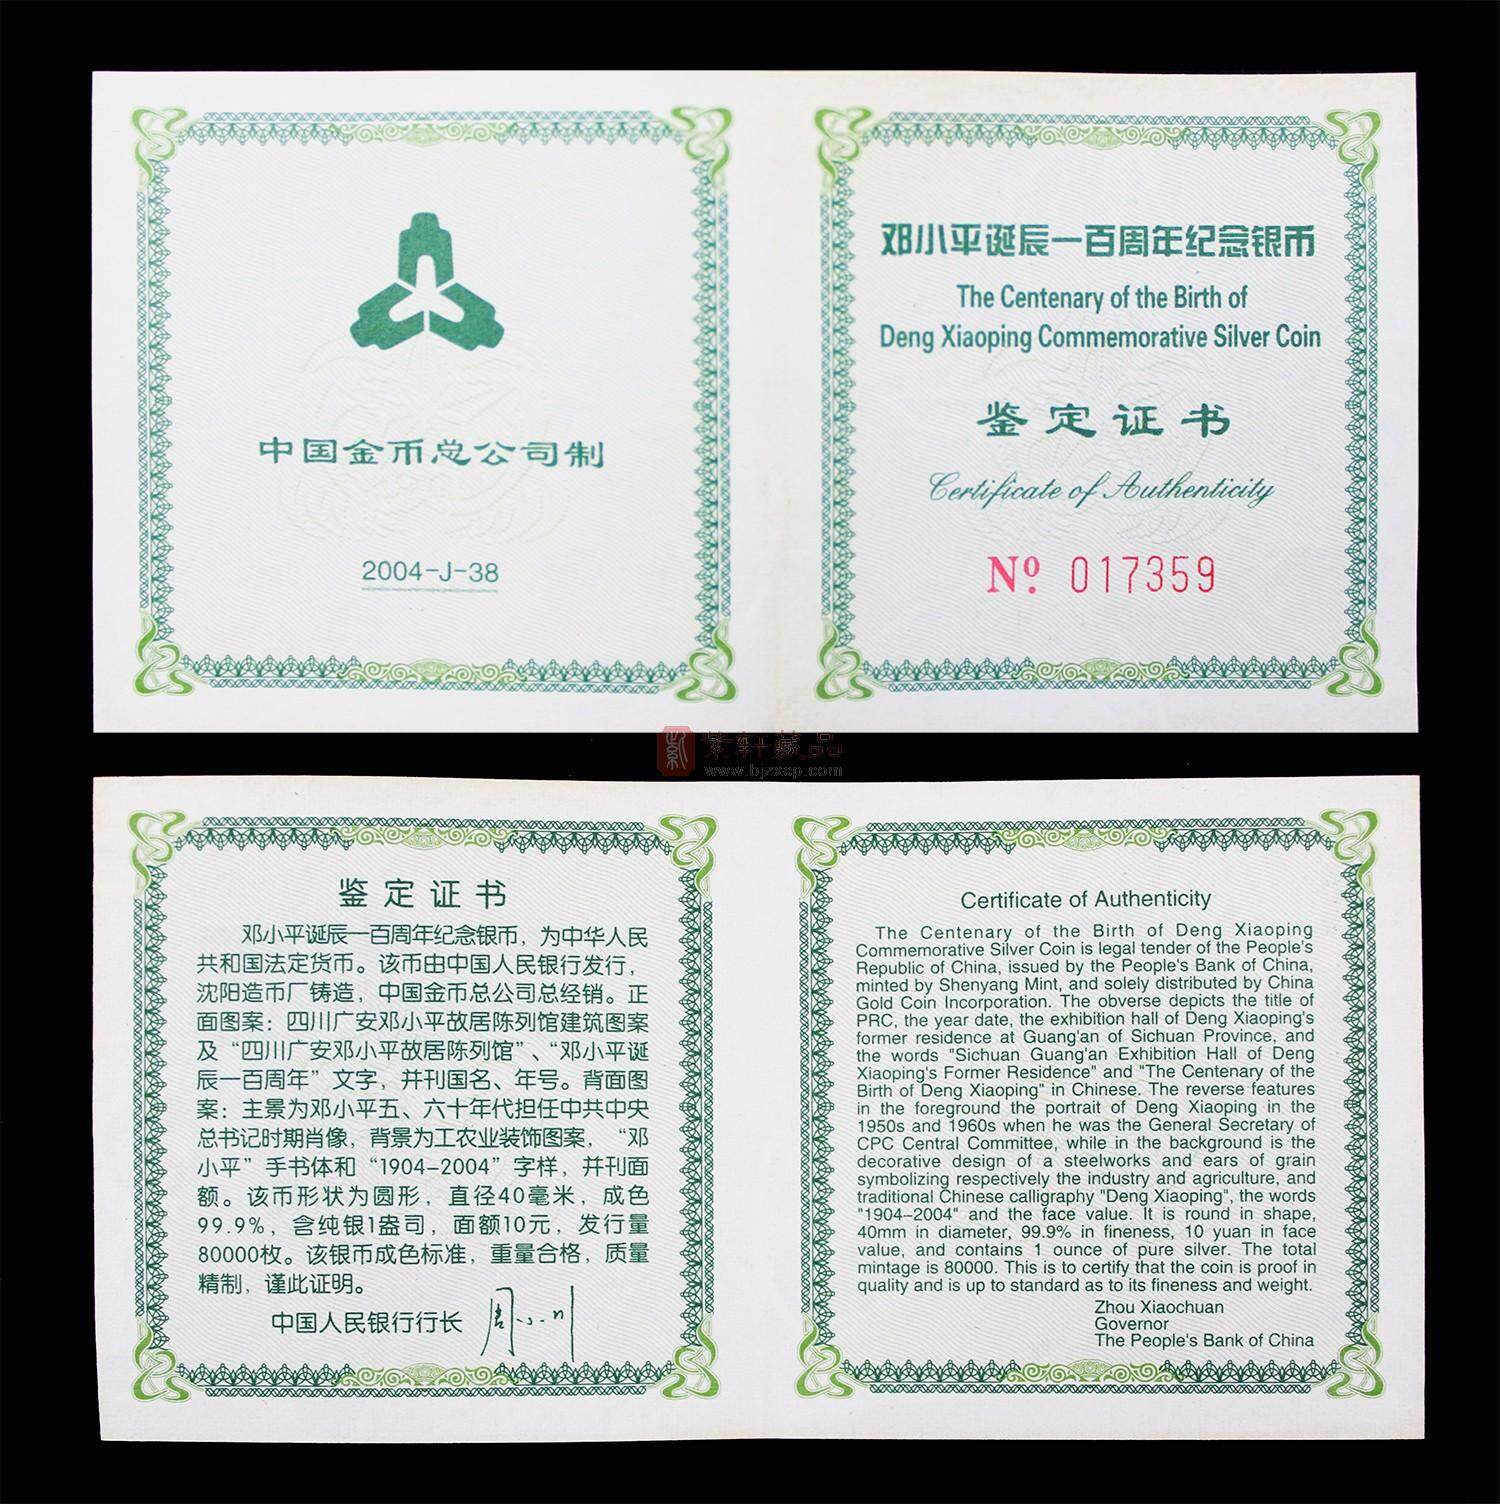 邓小平诞辰100周年1盎司圆形银质纪念币